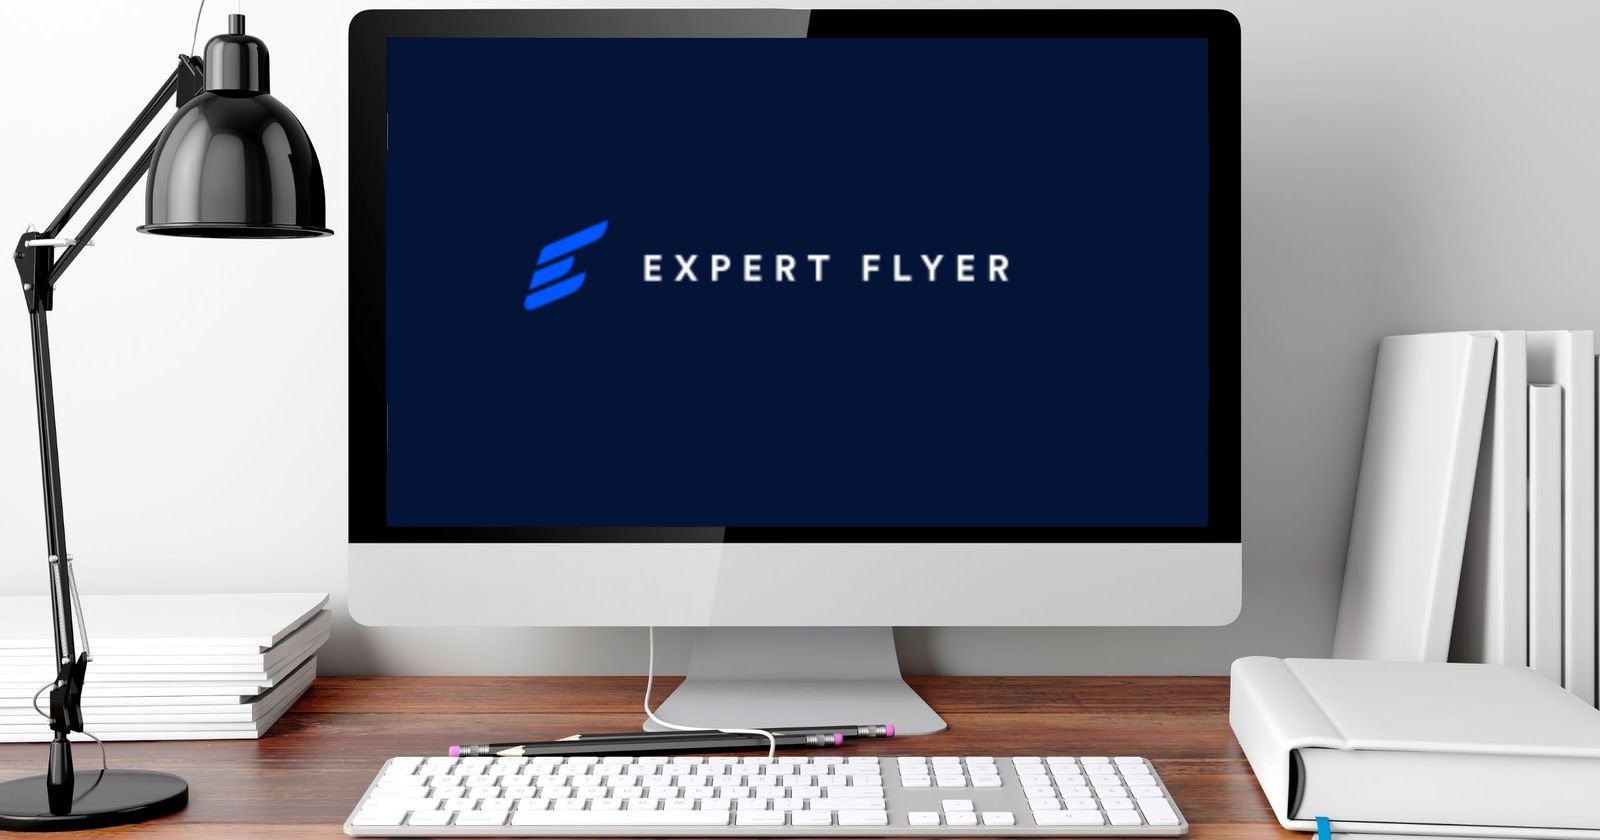 Expertflyer